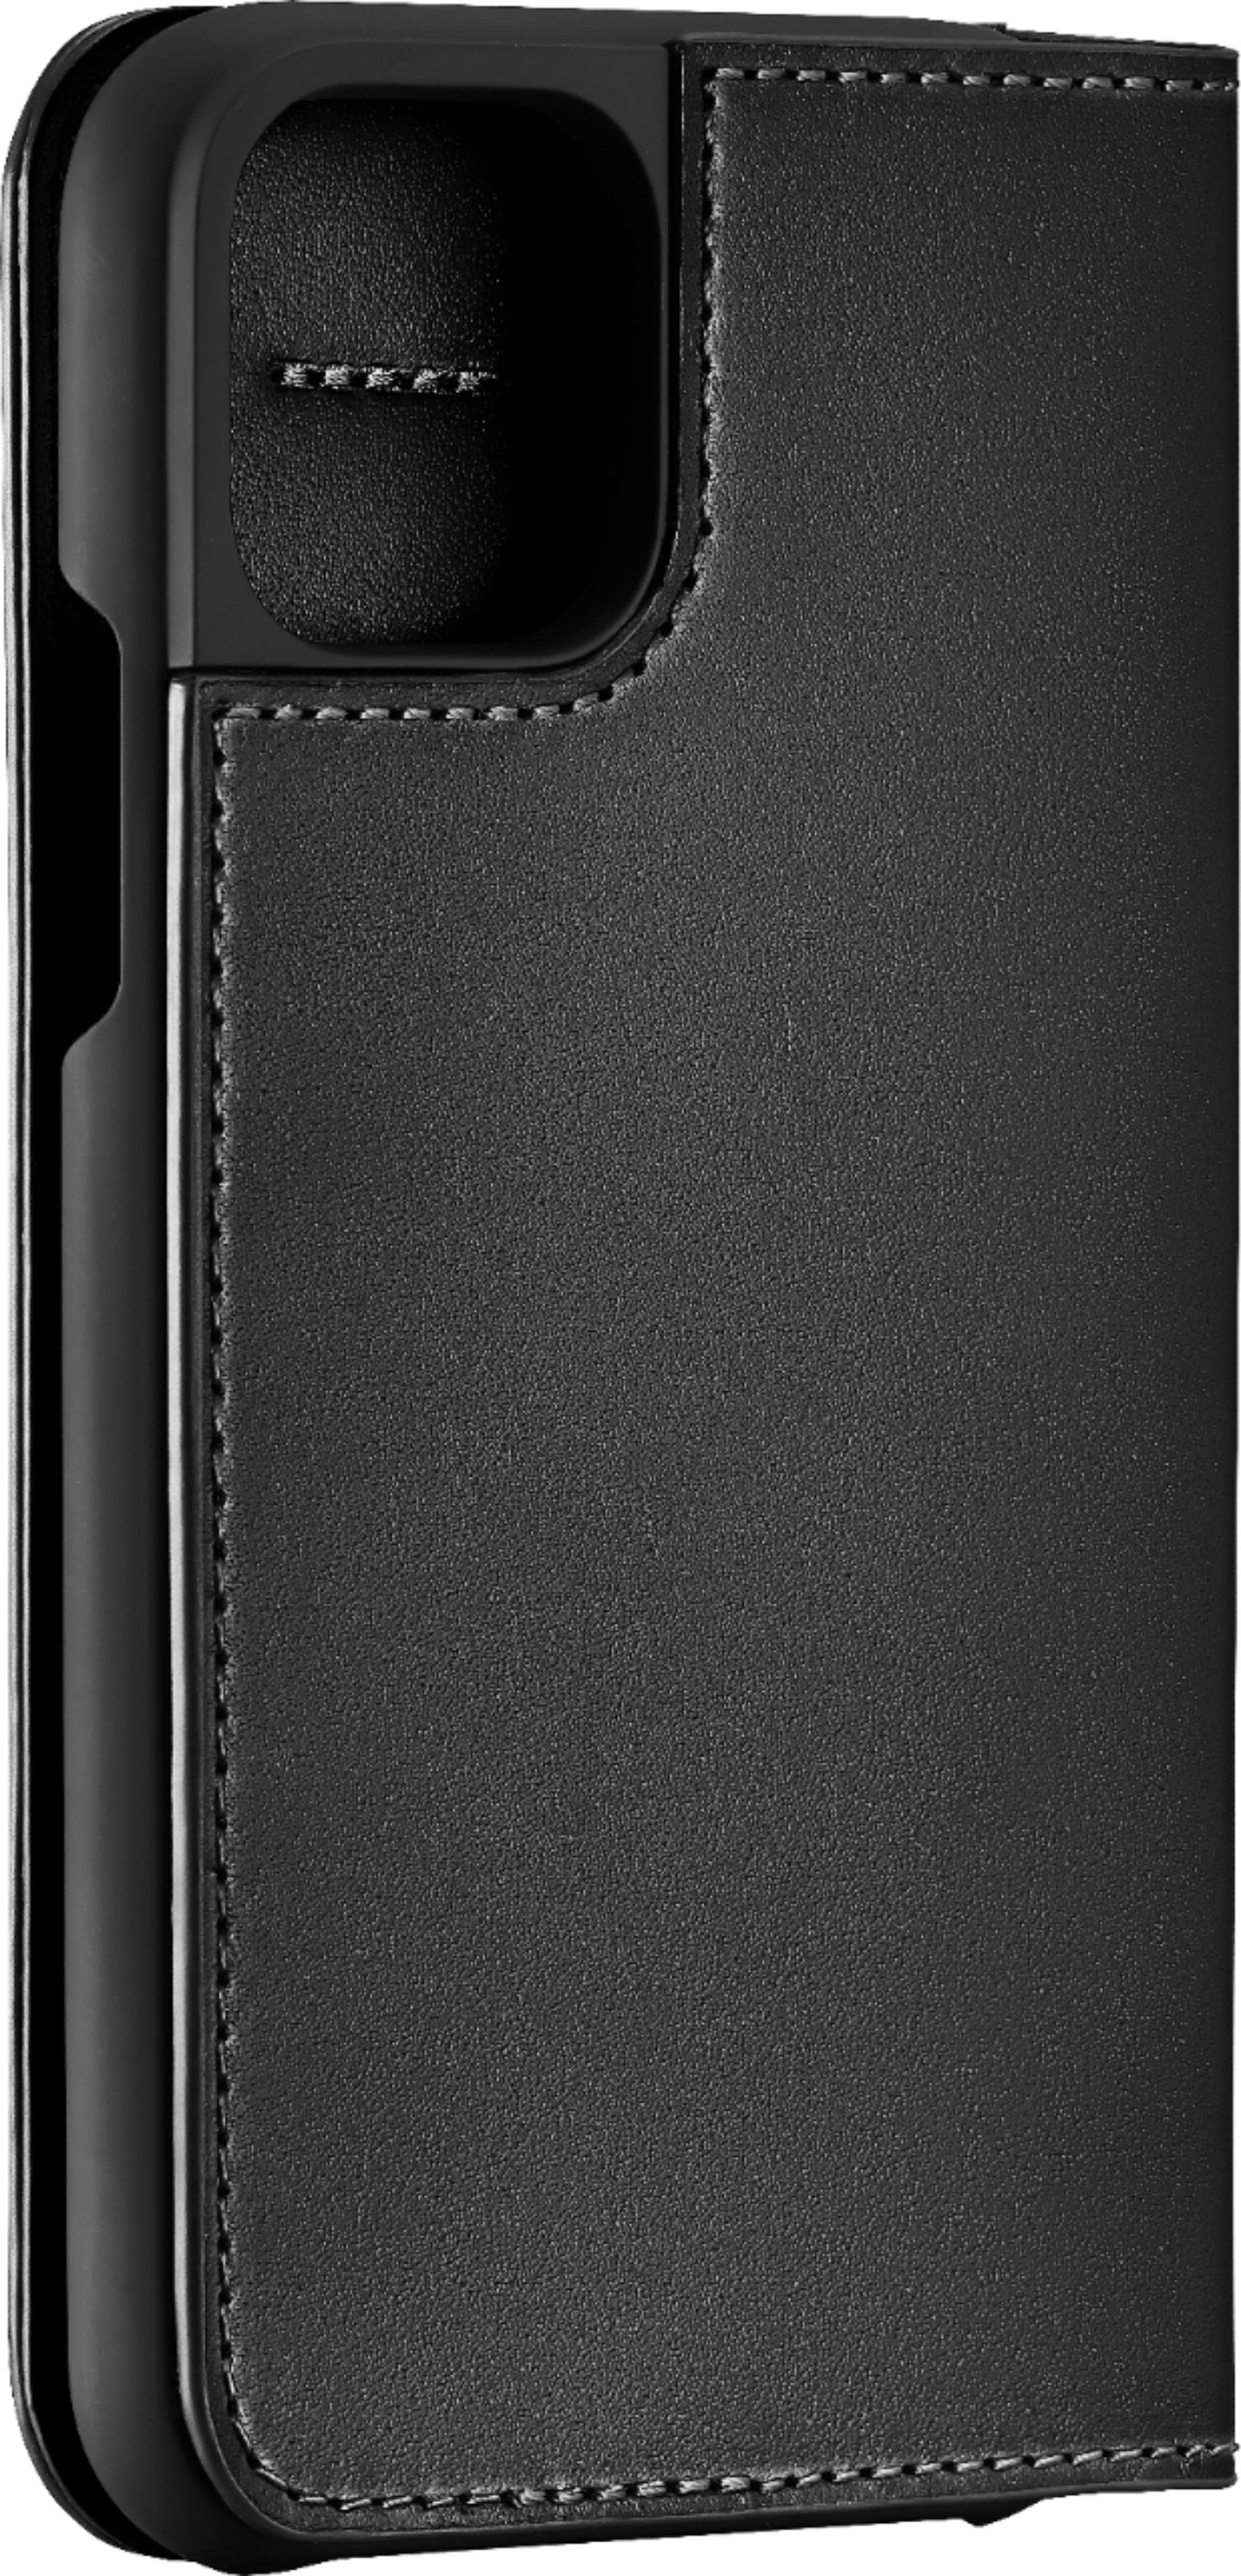 スマホアクセサリー iPhone用ケース Best Buy: Platinum™ Leather Folio Case for Apple® iPhone® 11 Pro 